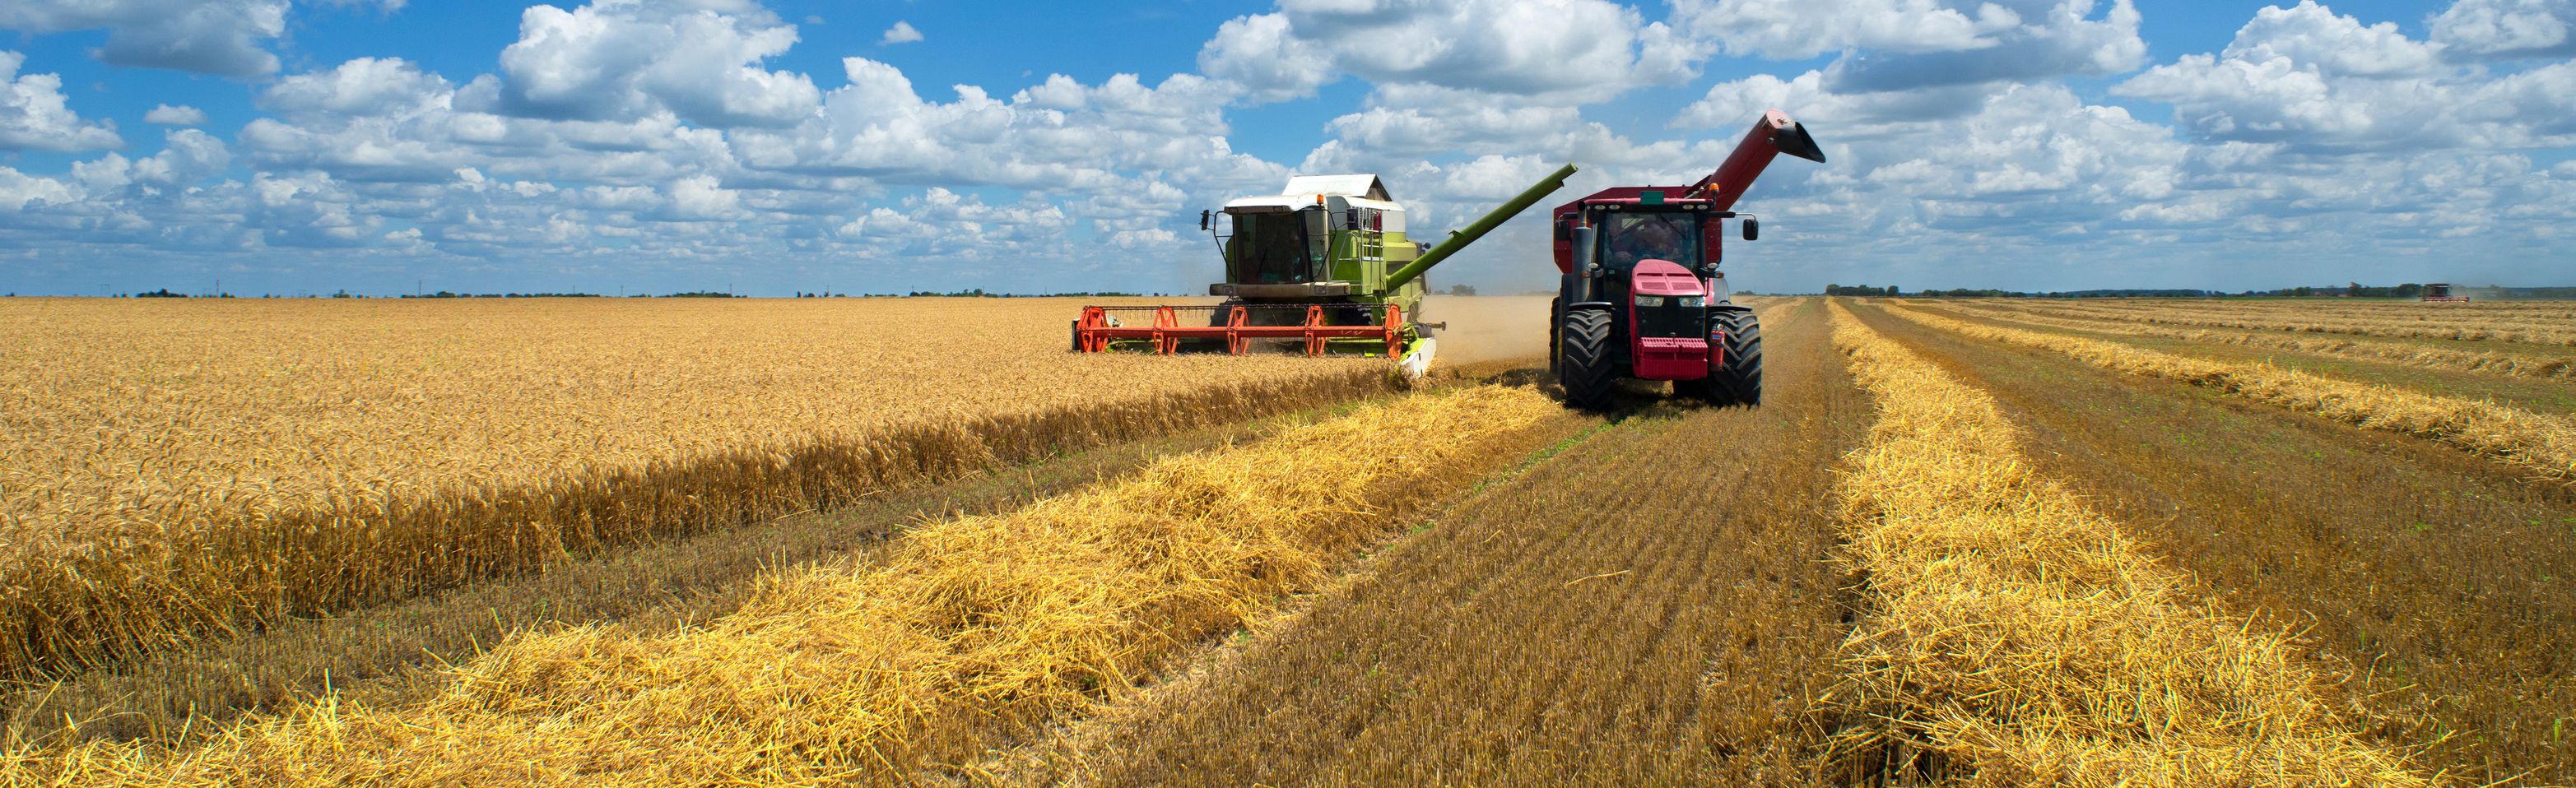 Cosechadora de trigo en campos de cereales